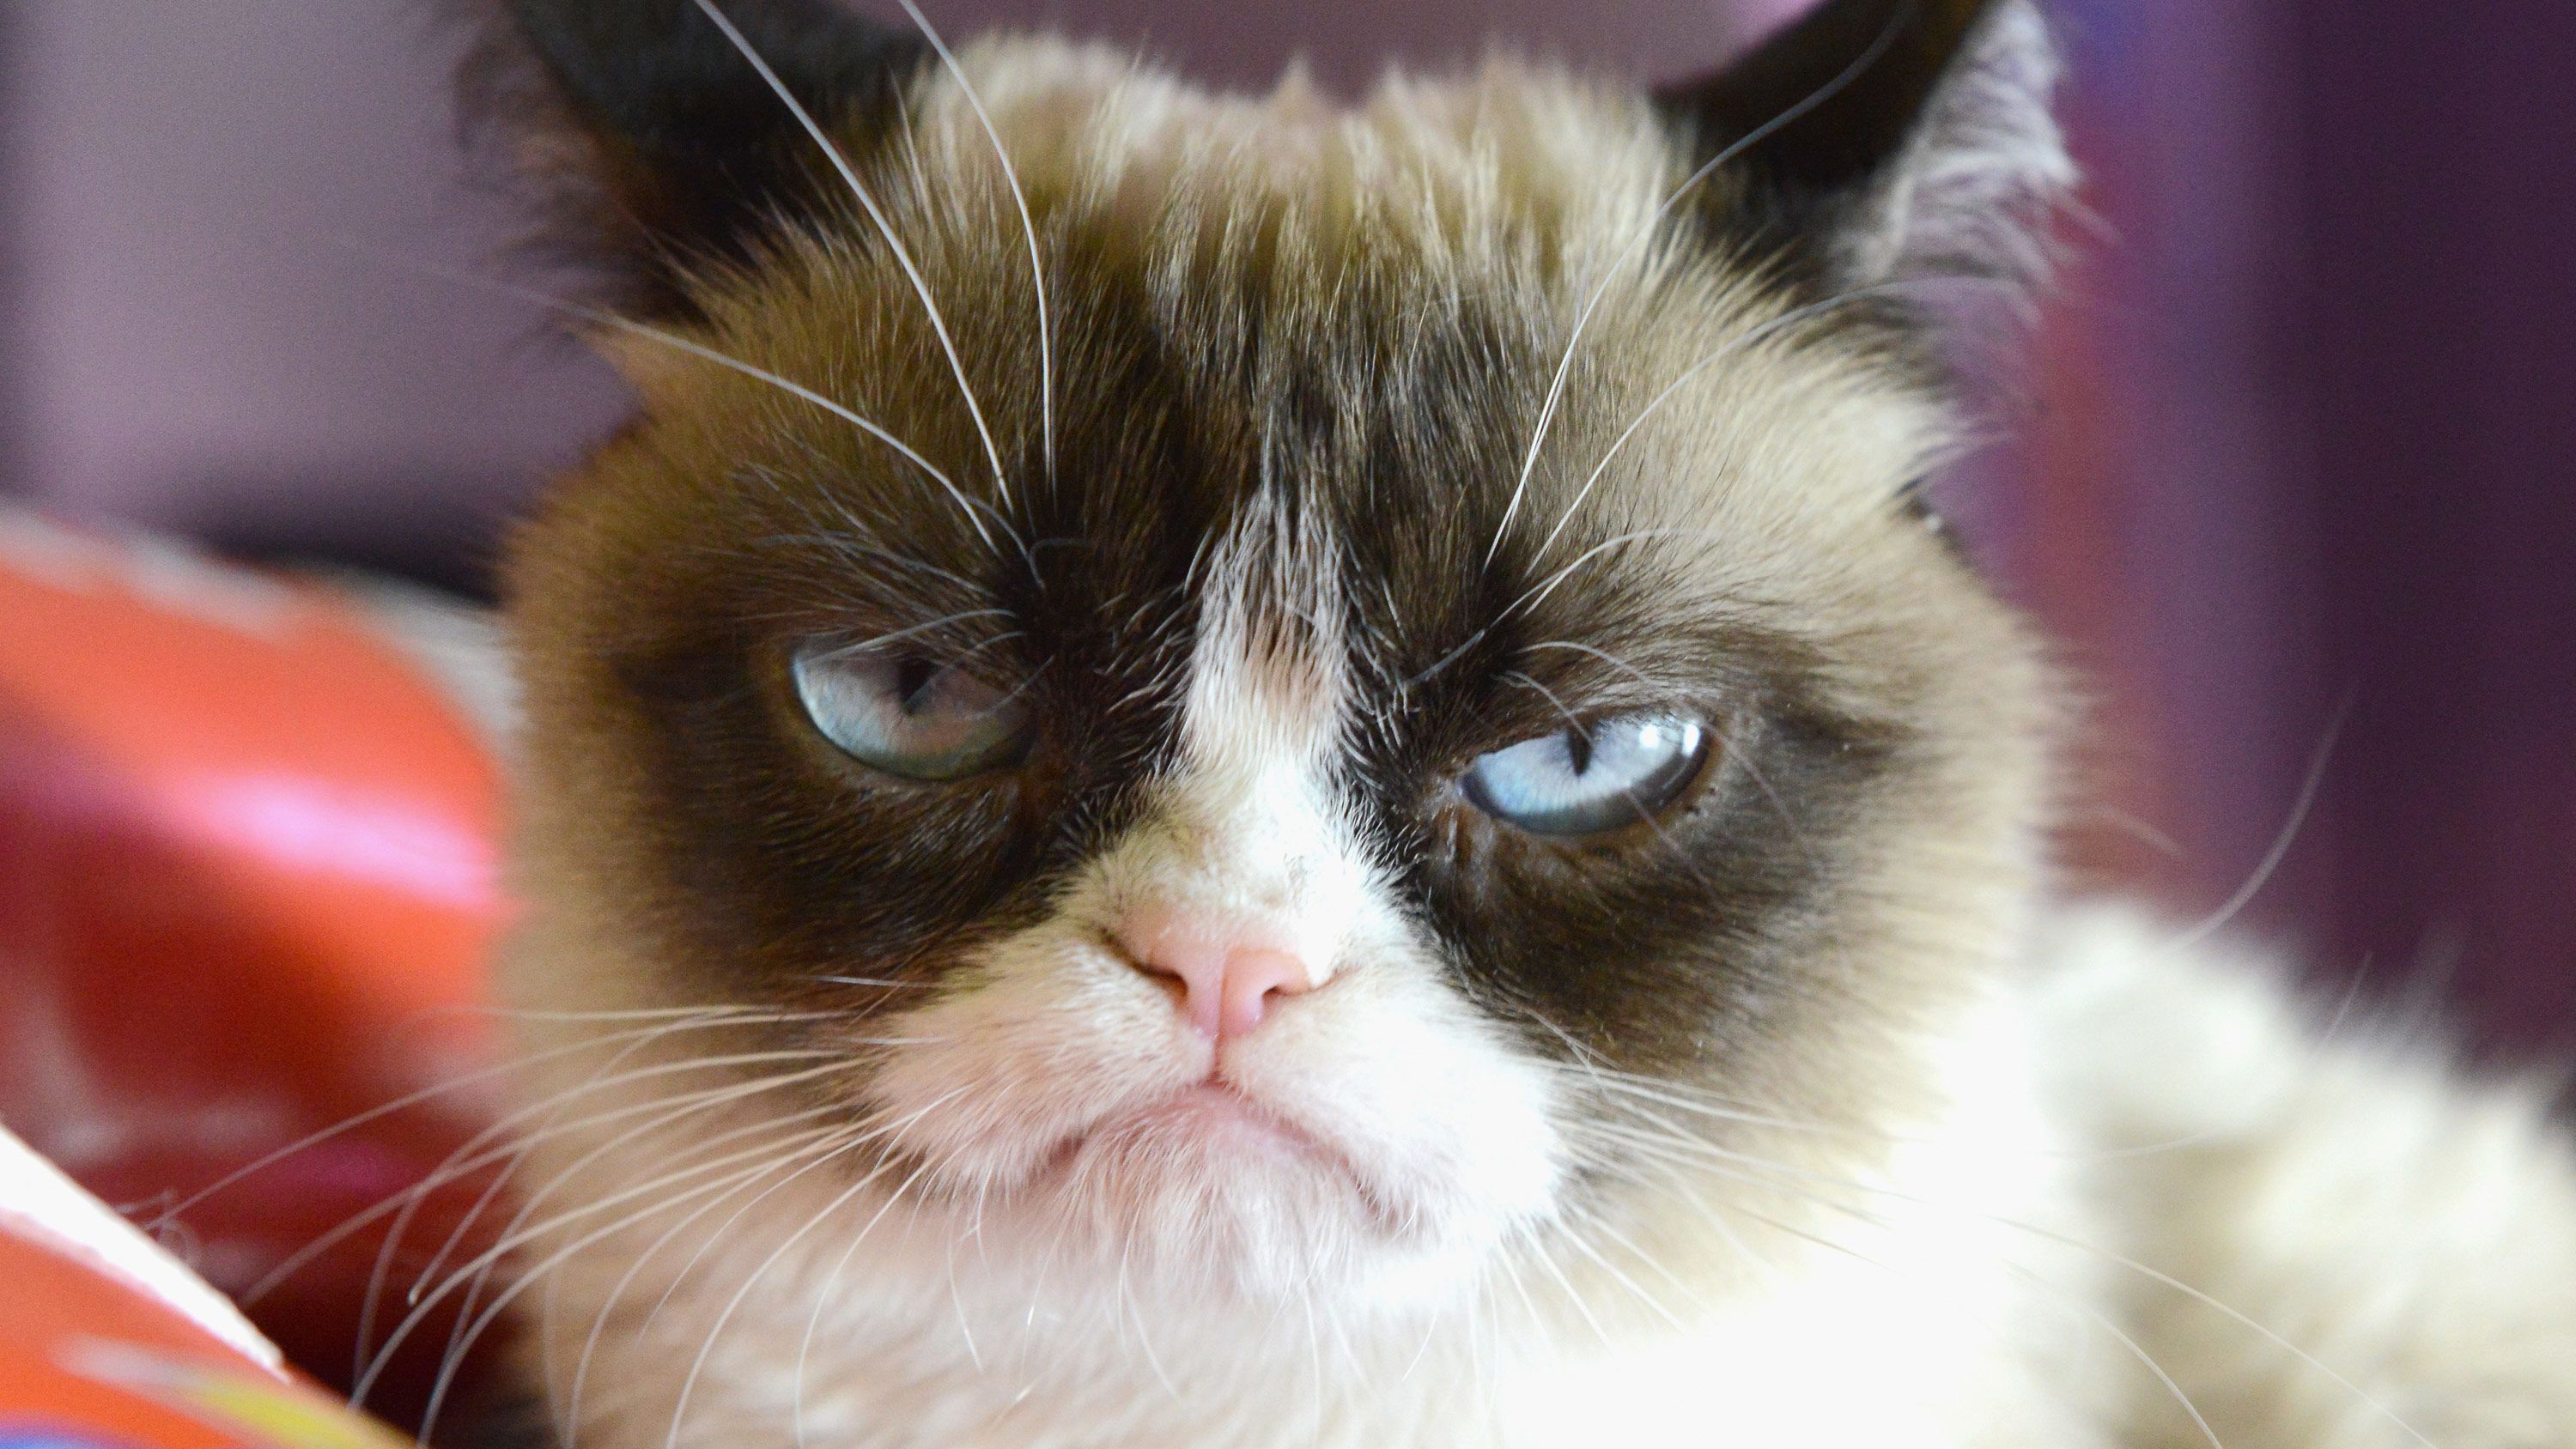 grumpy cat so beautiful